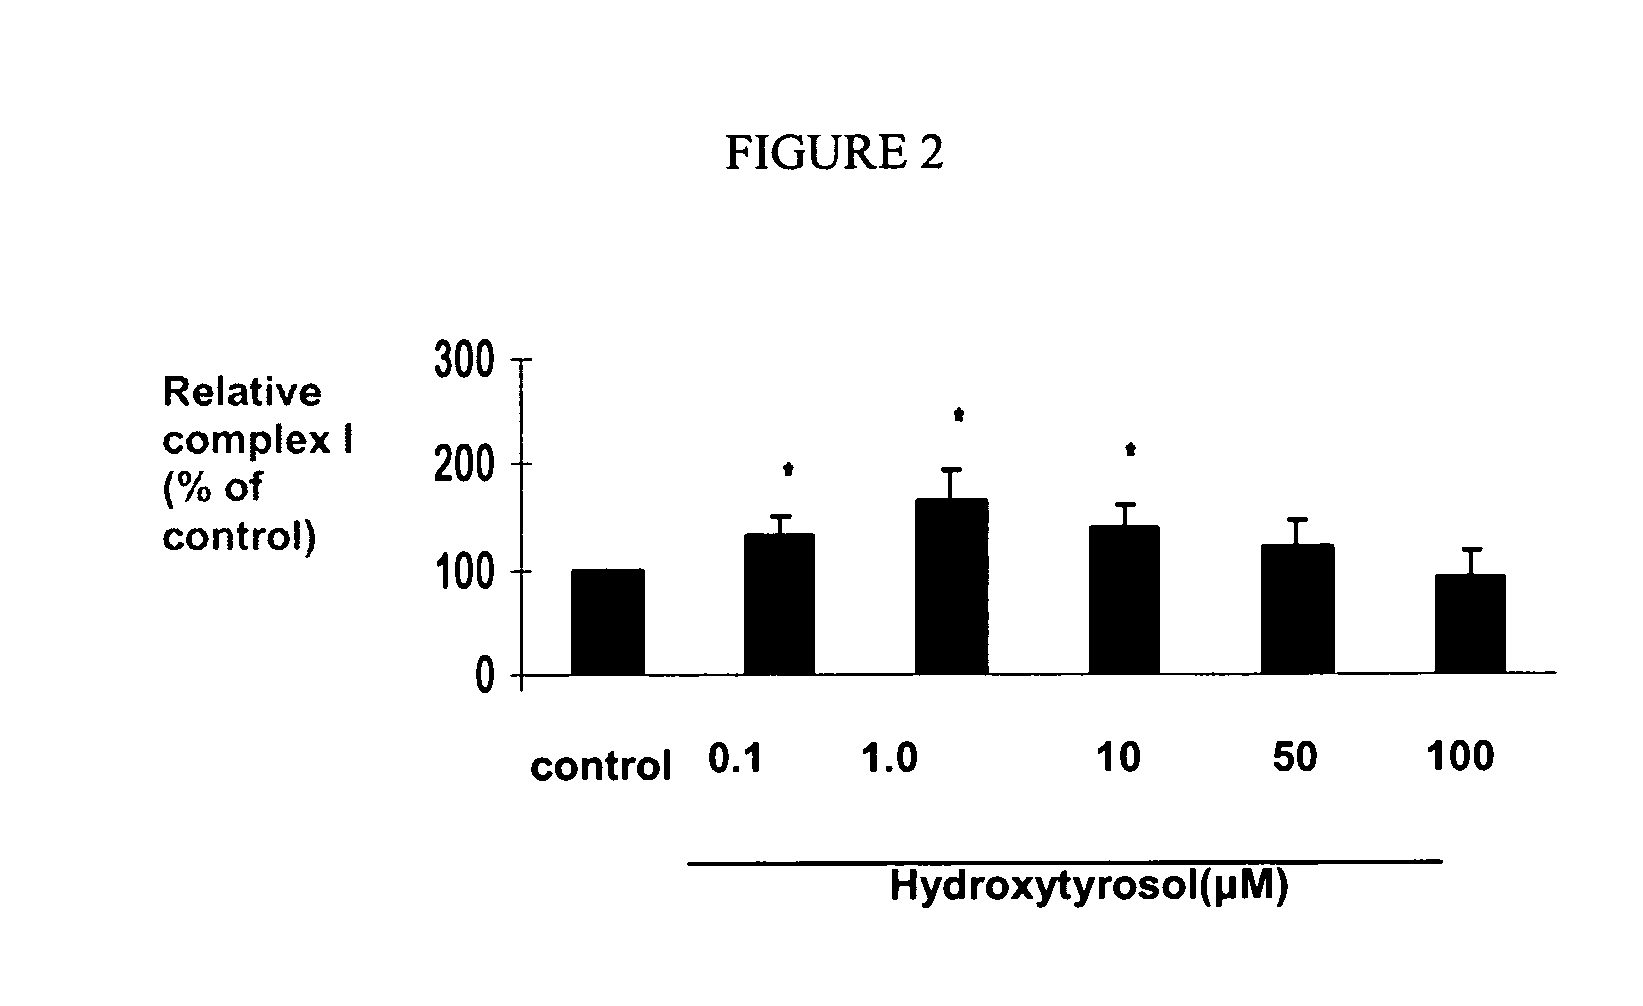 Use of hydroxytyrosol as Anti-aging agent